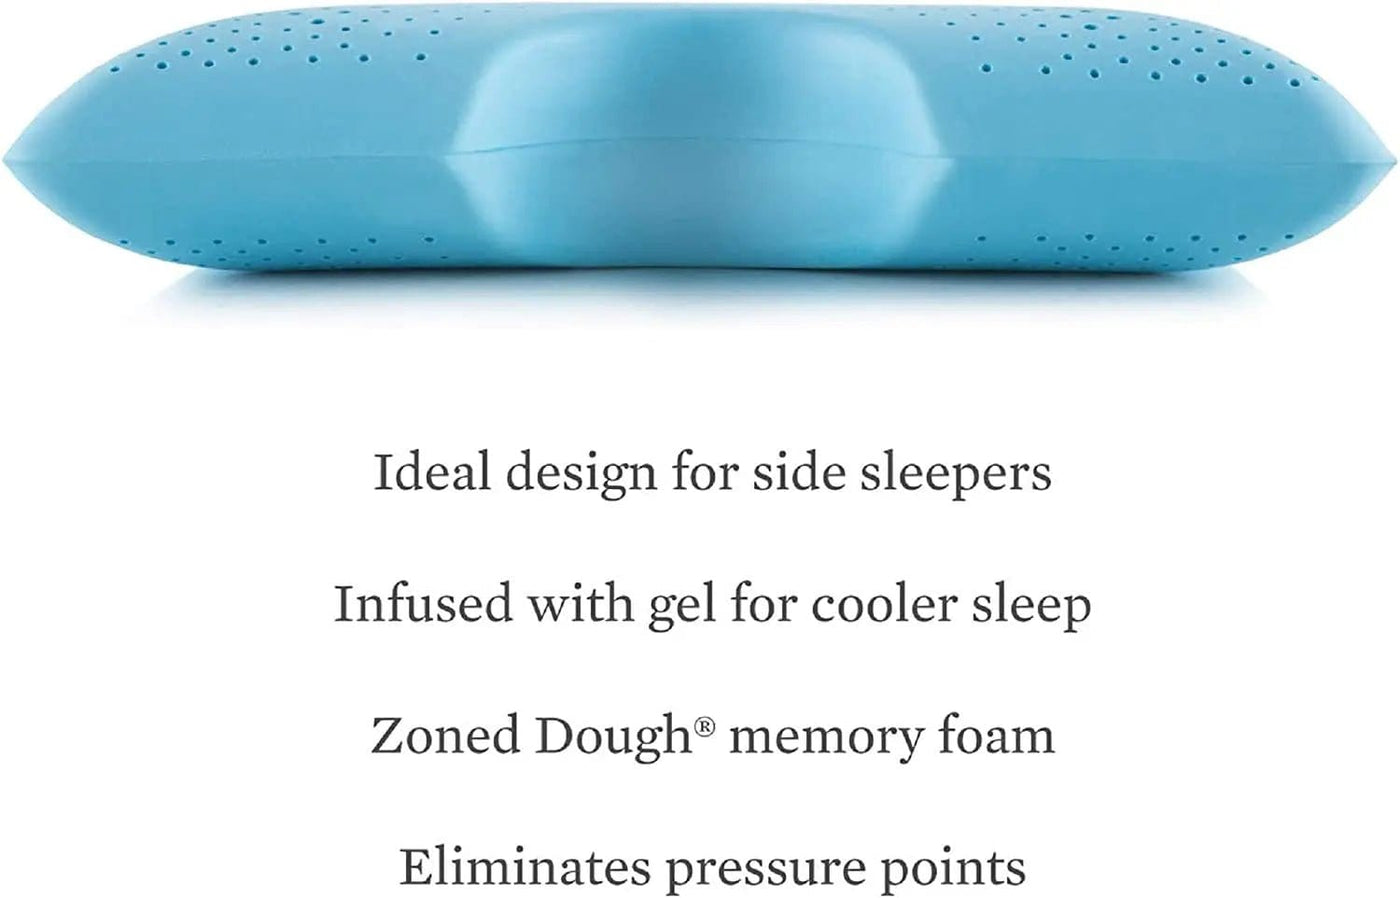 Linen World Pillows MALOUF Z Side-Sleeper Zoned Dough Memory Foam  Pillow - Gel Infused - Premium Tencel Cover - 5 Year U.S. Warranty - Mid Loft - Queen